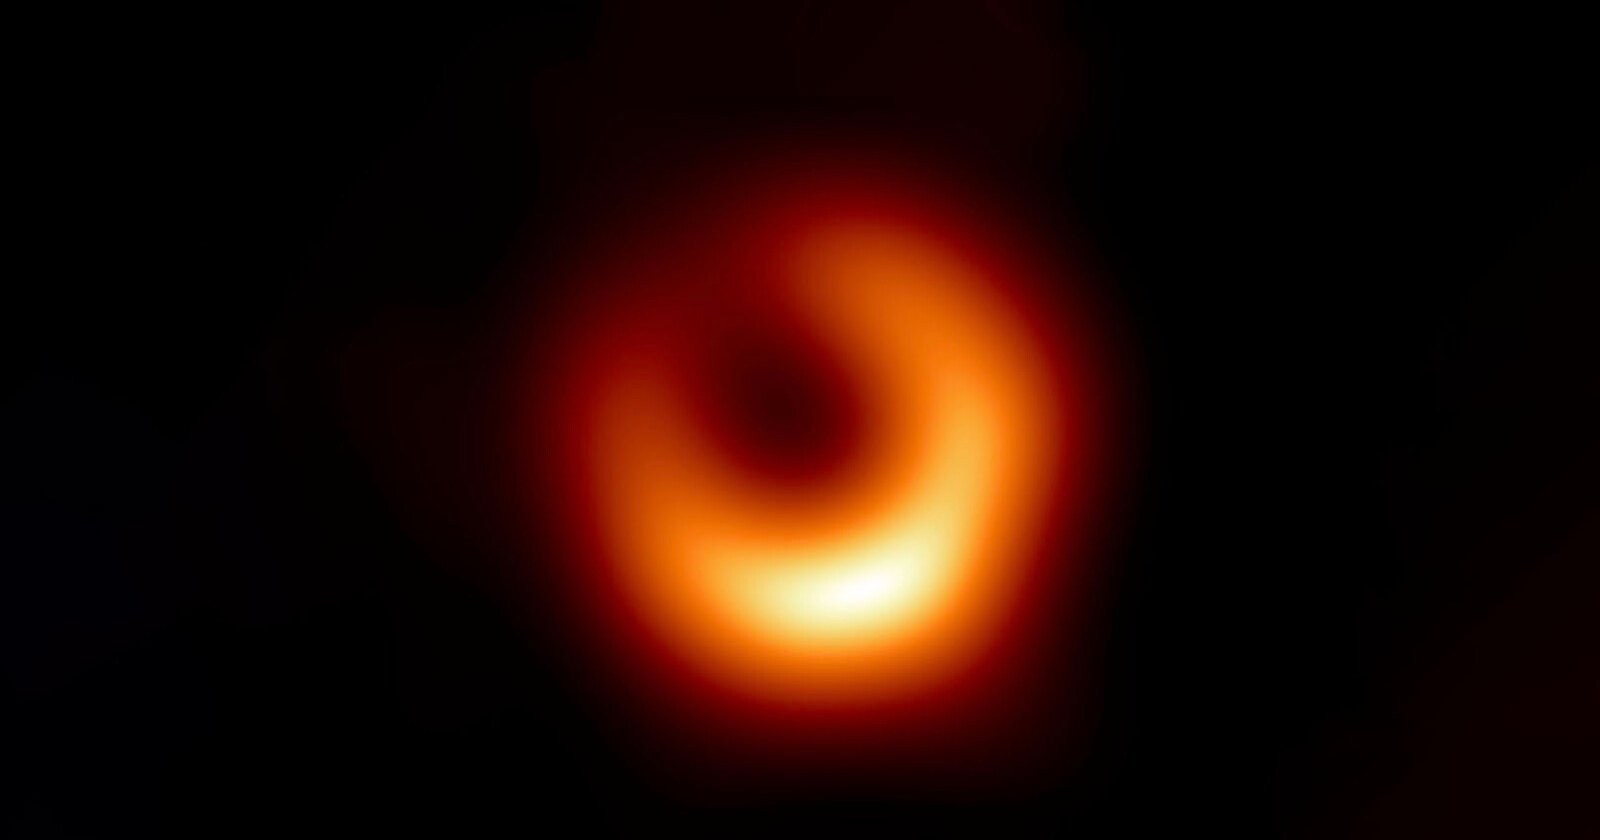  sharpest black hole image yet 